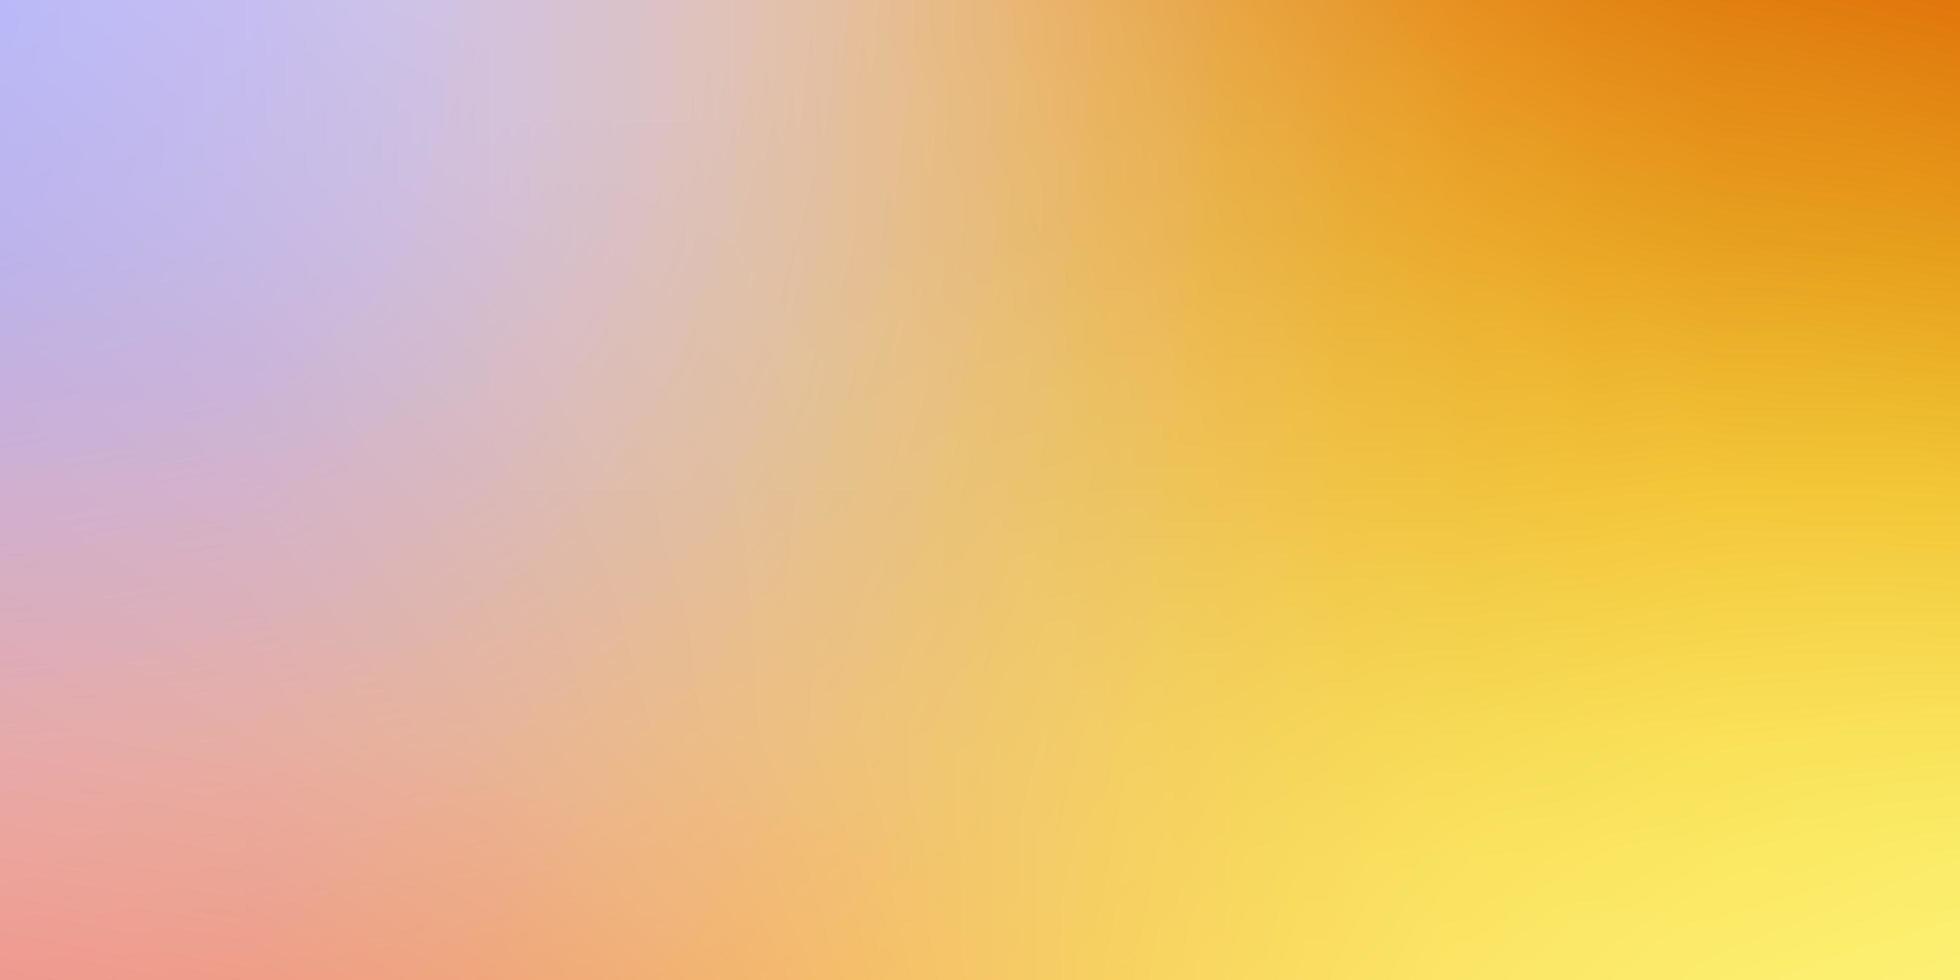 ljusrosa, gul vektor abstrakt suddig bakgrund.